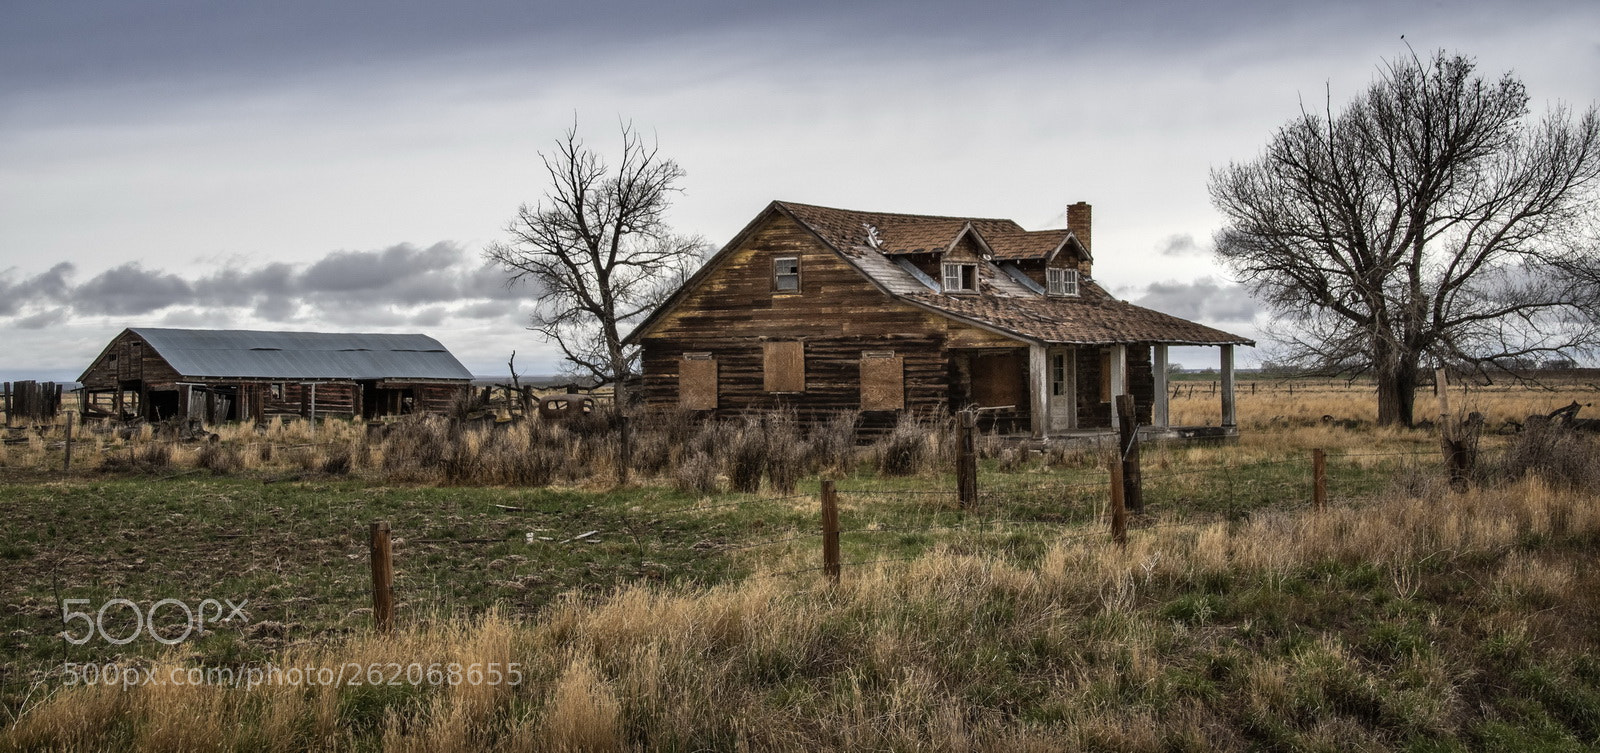 Nikon D7500 sample photo. Wyoming farmhouse photography